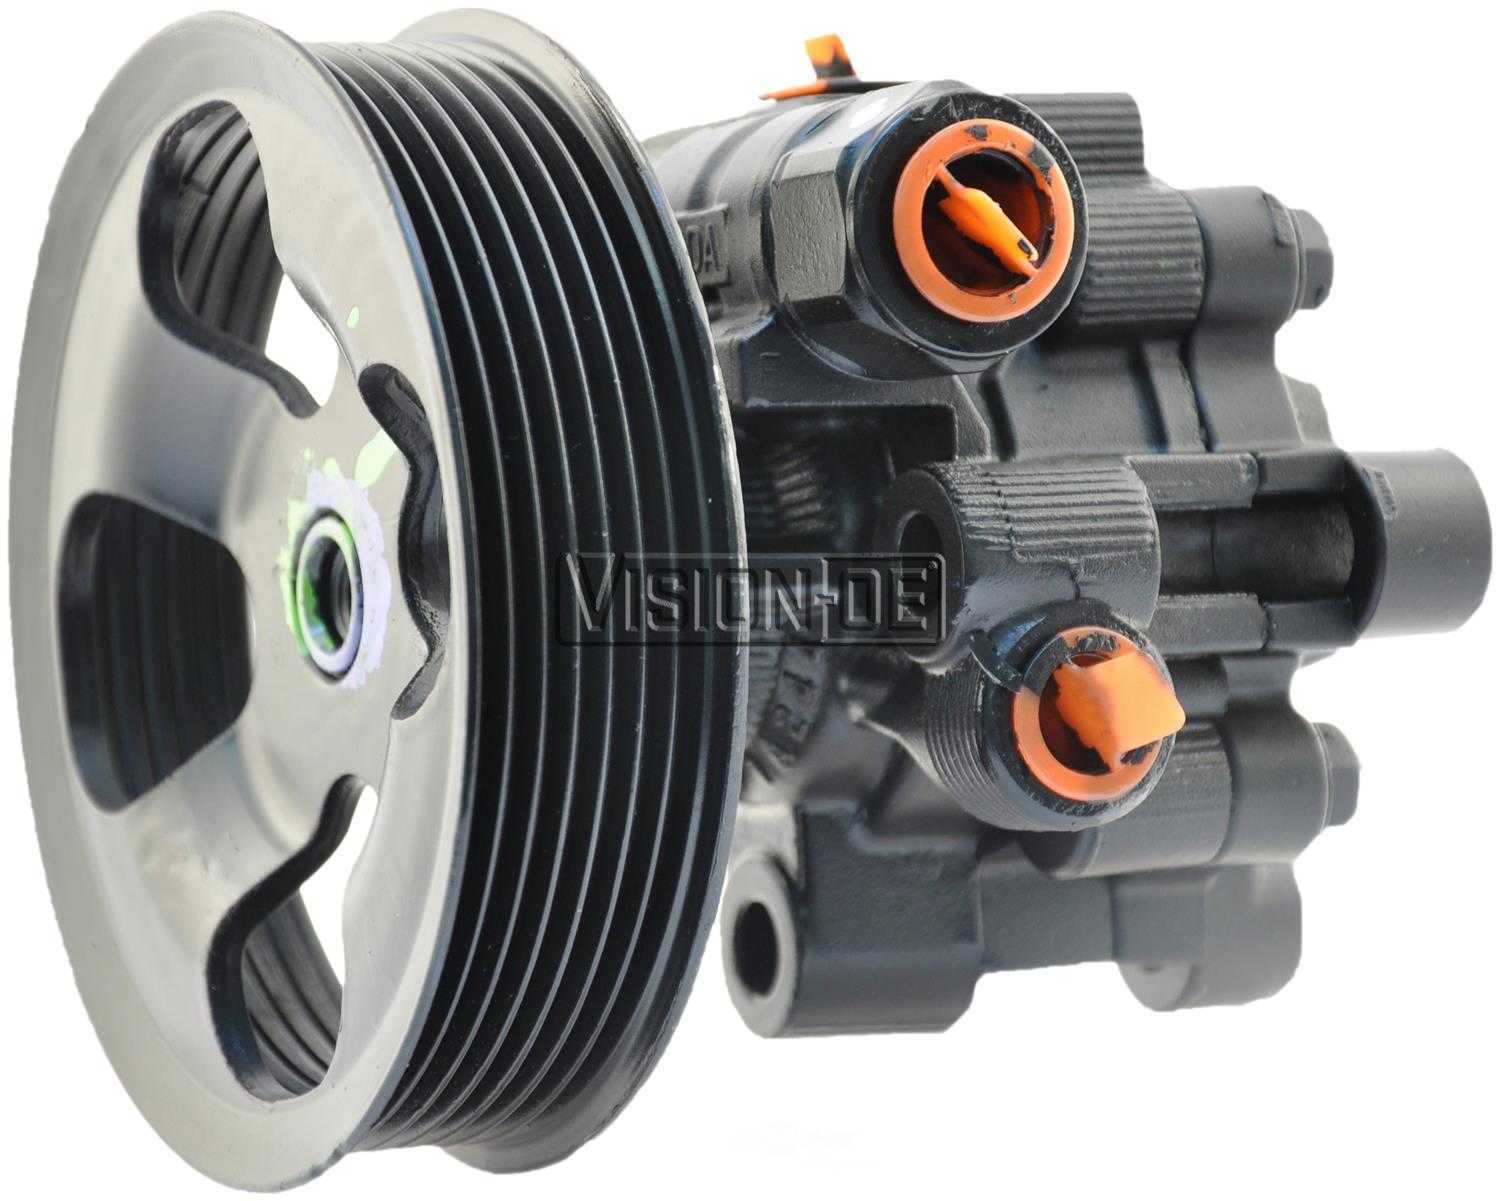 VISION-OE - Reman Power Steering Pump - VOE 990-0947